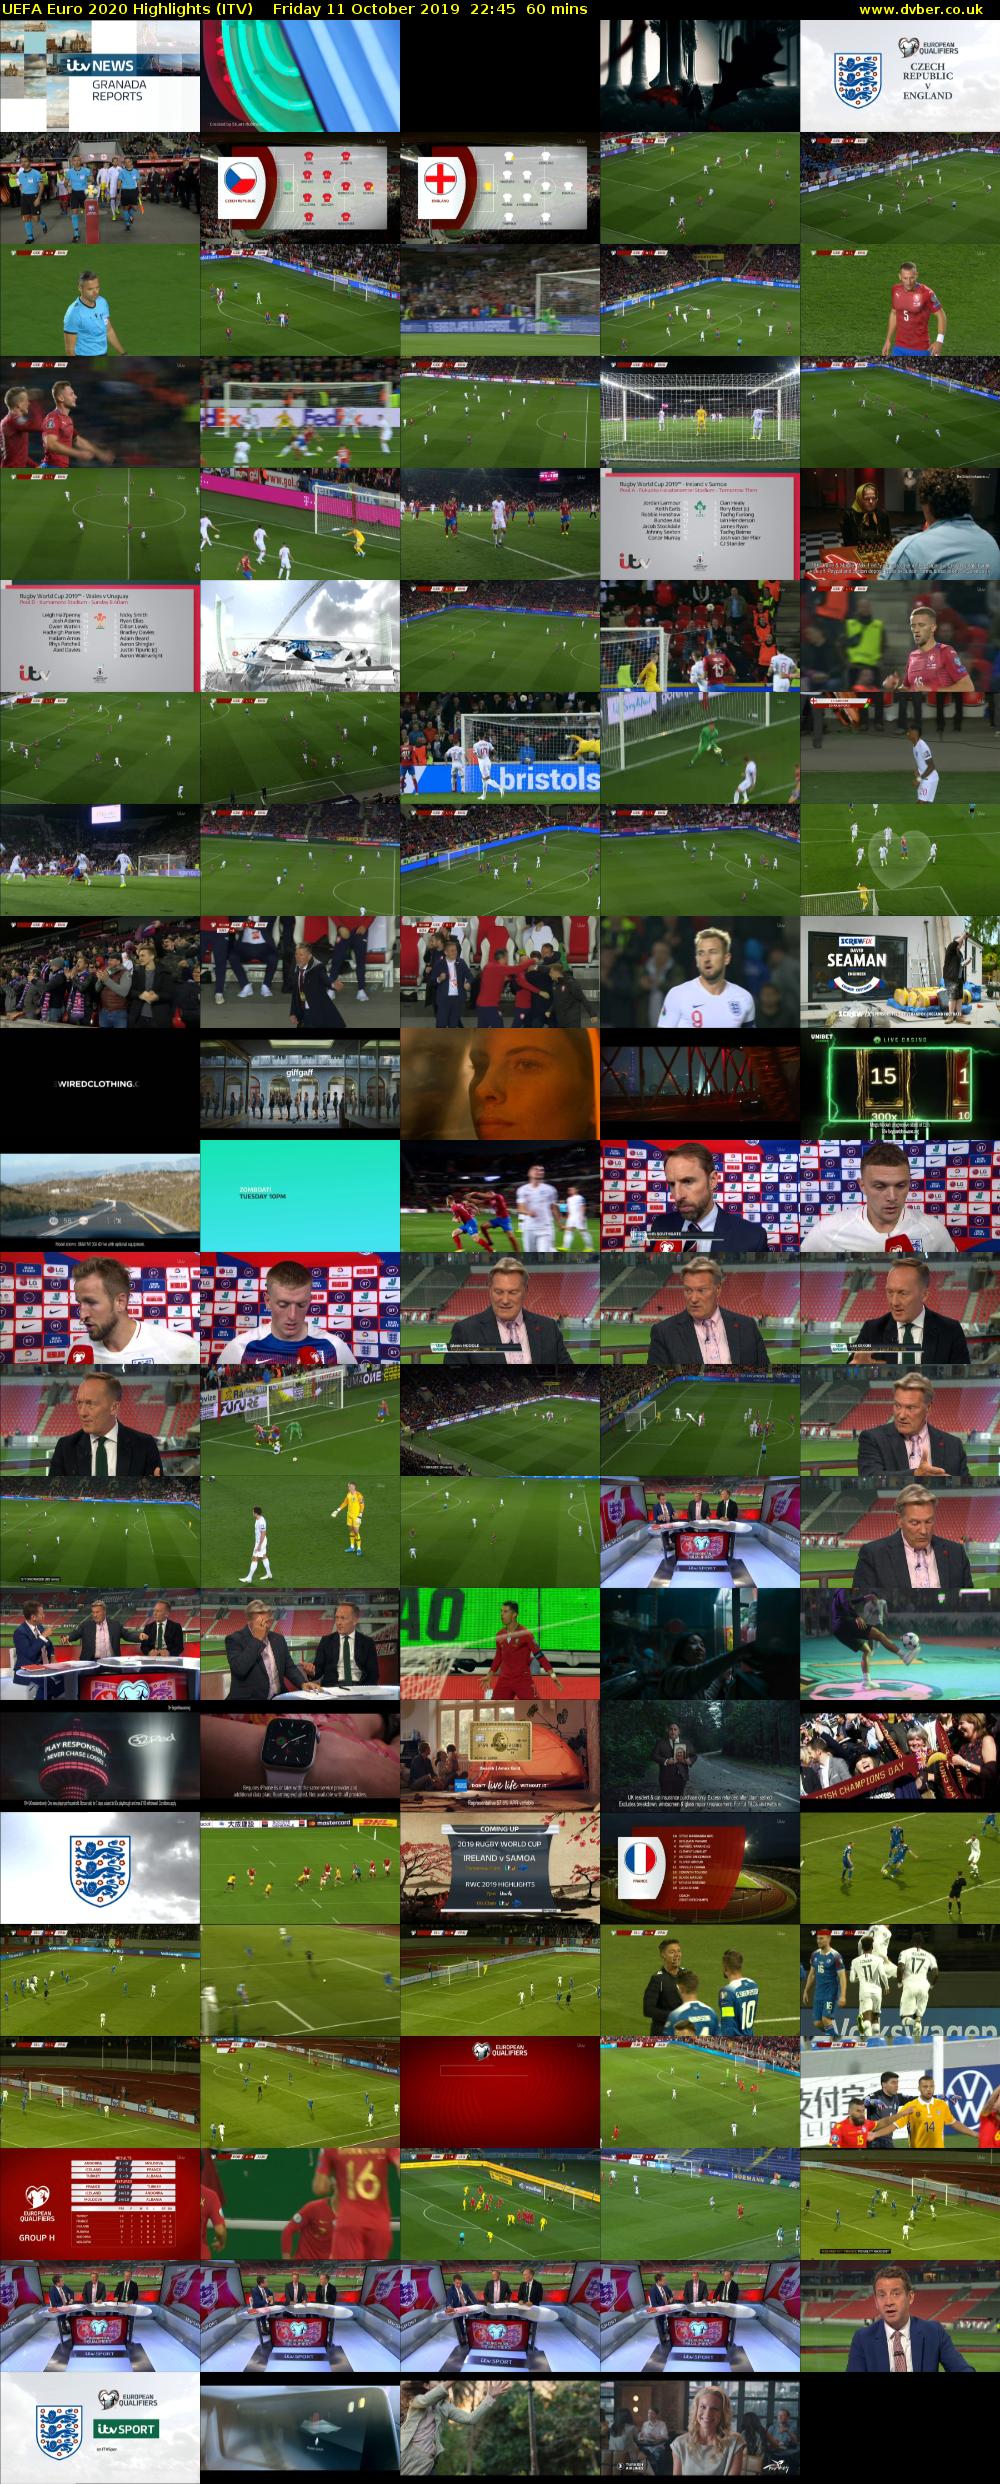 UEFA Euro 2020 Highlights (ITV) Friday 11 October 2019 22:45 - 23:45